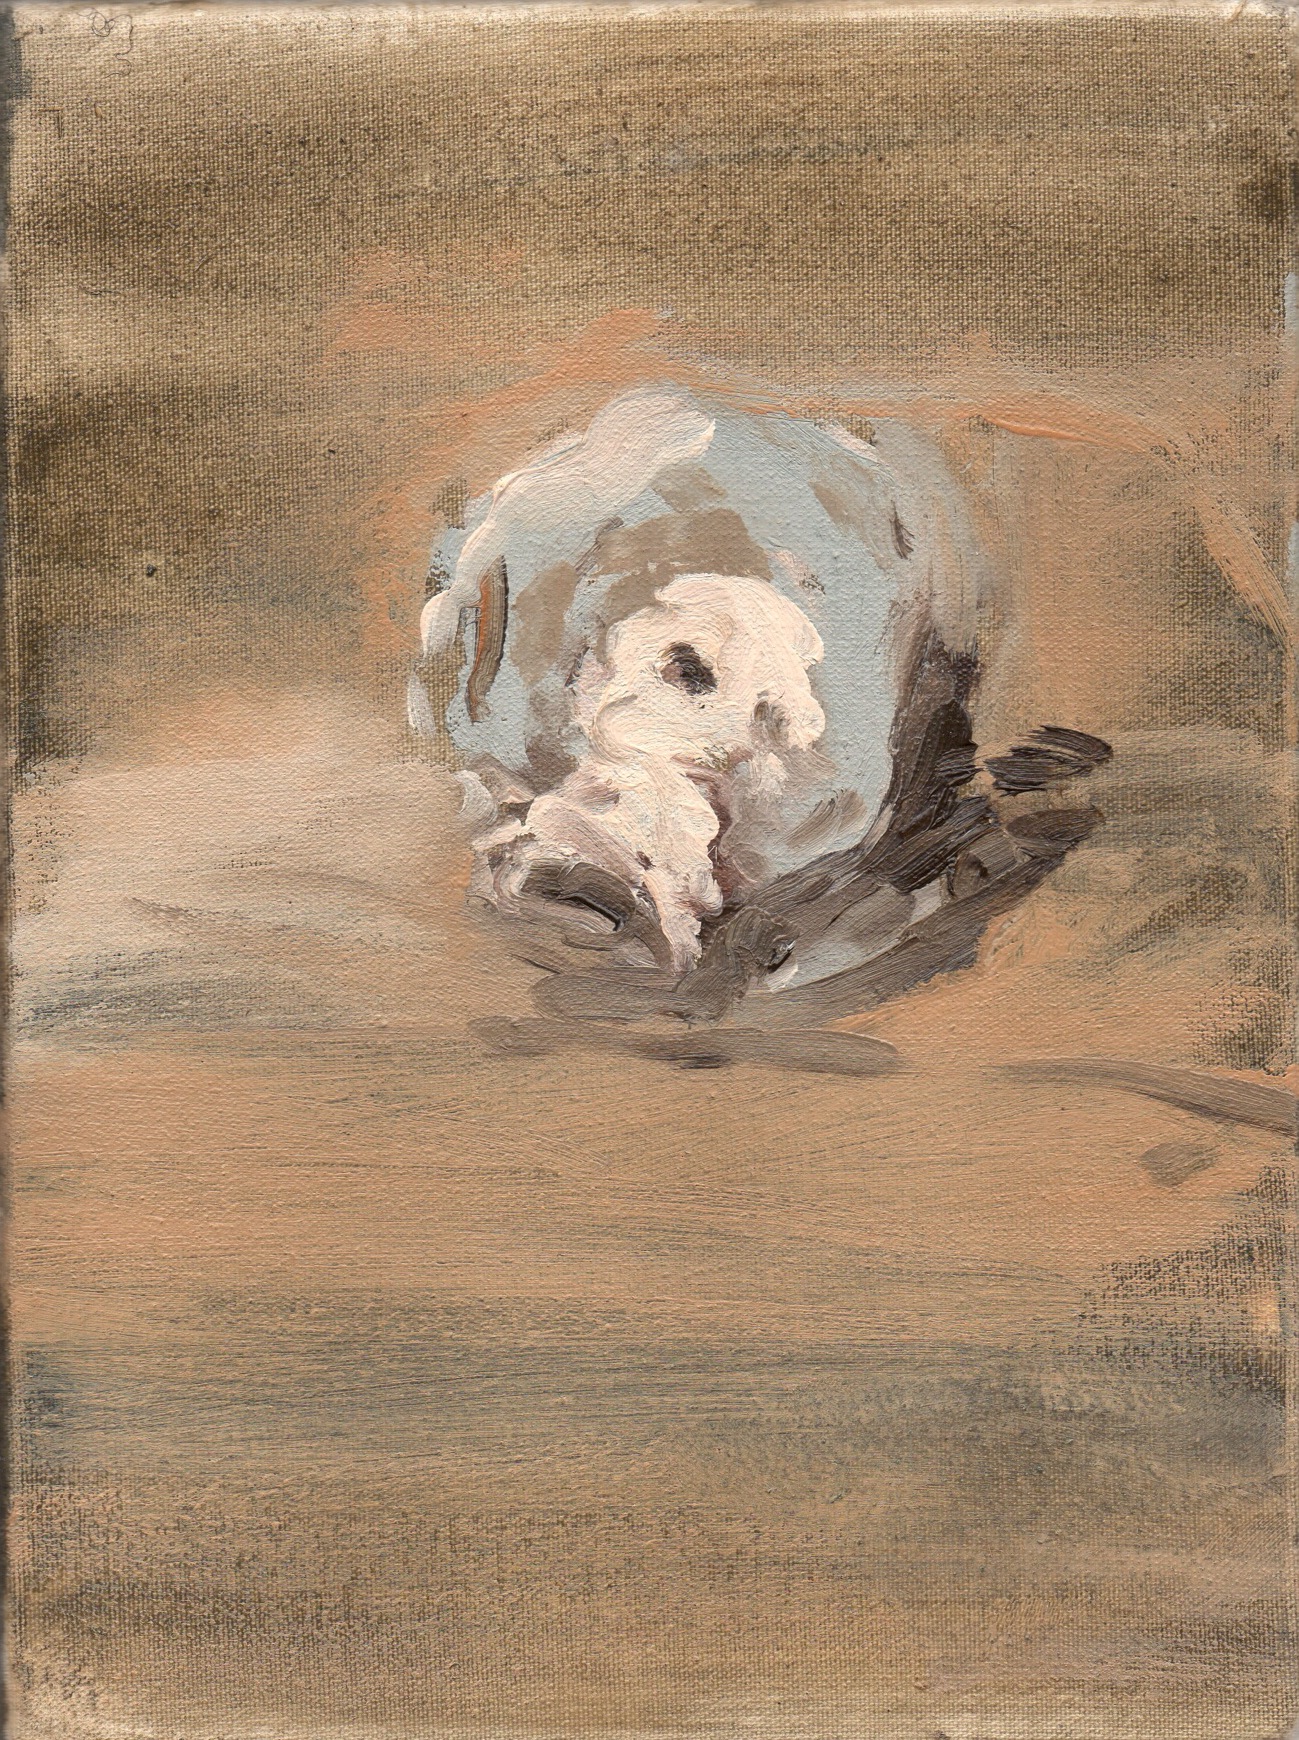 Sebastiano Impellizzeri, Testa portoghese, olio su tela, 18x24 cm, 2014